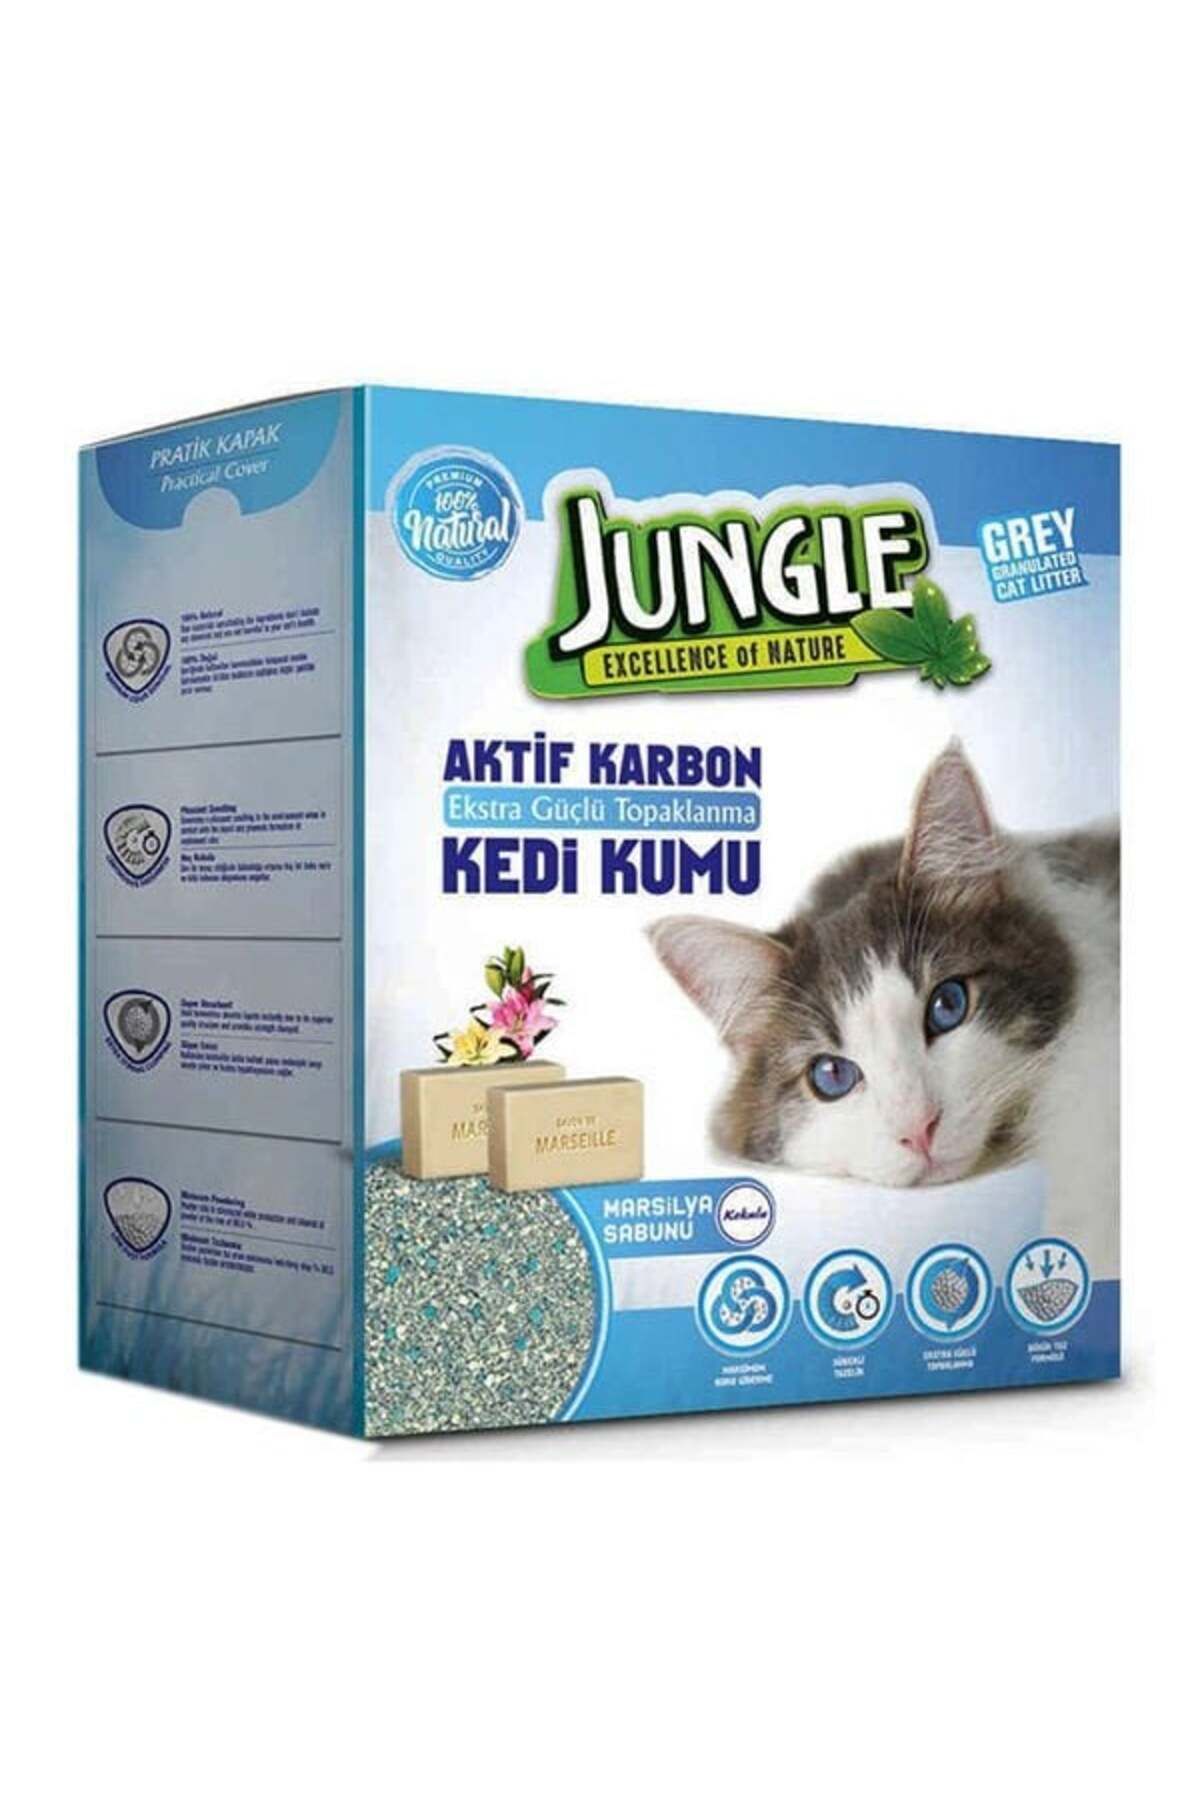 Jungle İnce Taneli Karbonlu ve Marsilya Sabunlu Topaklanan Kedi Kumu 6 Lt